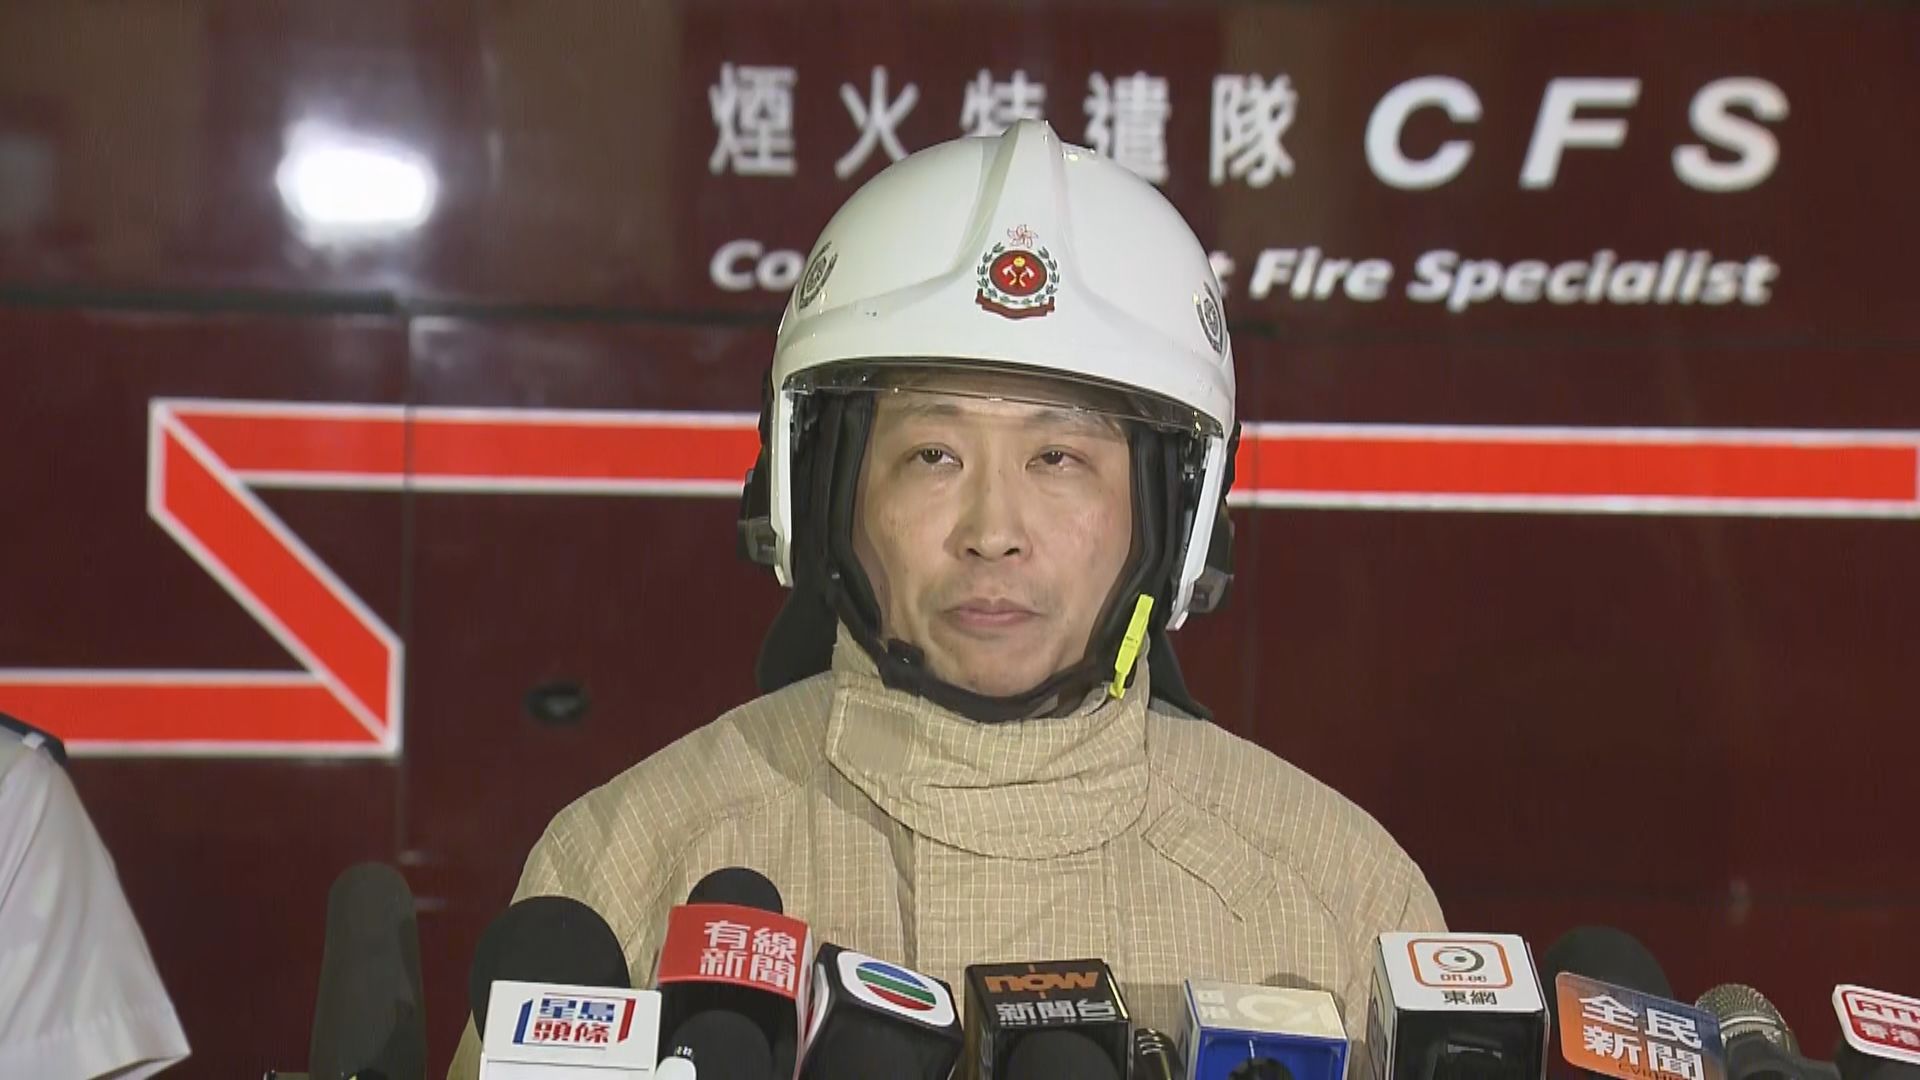 【洪水橋三級火】消防稱兩天秤有倒塌風險 火場面積大滅火需一段時間 